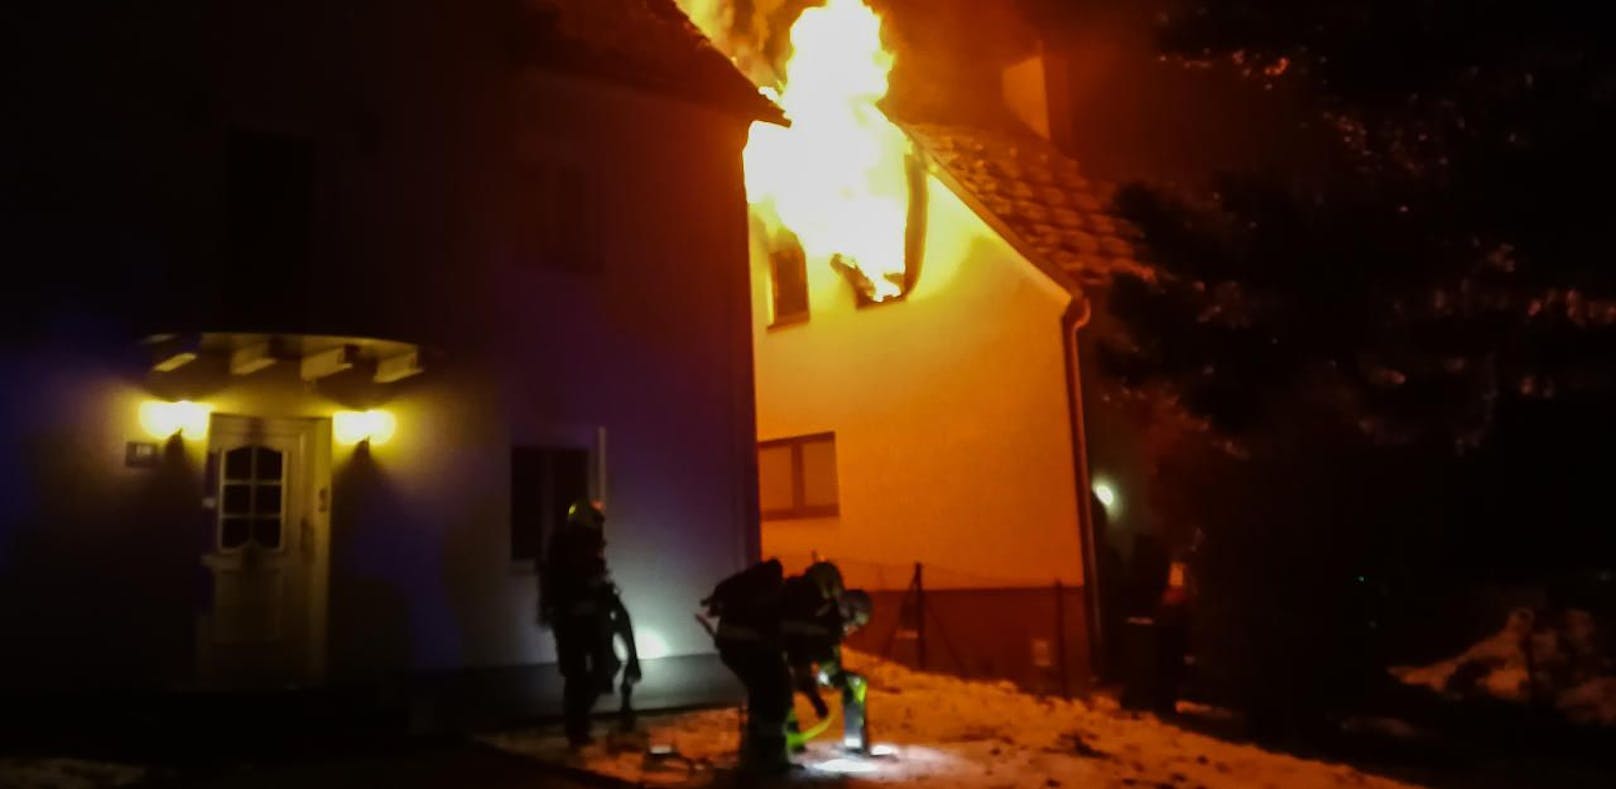 Explosionsgefahr bei Feuer in "Waffen-Wohnung"